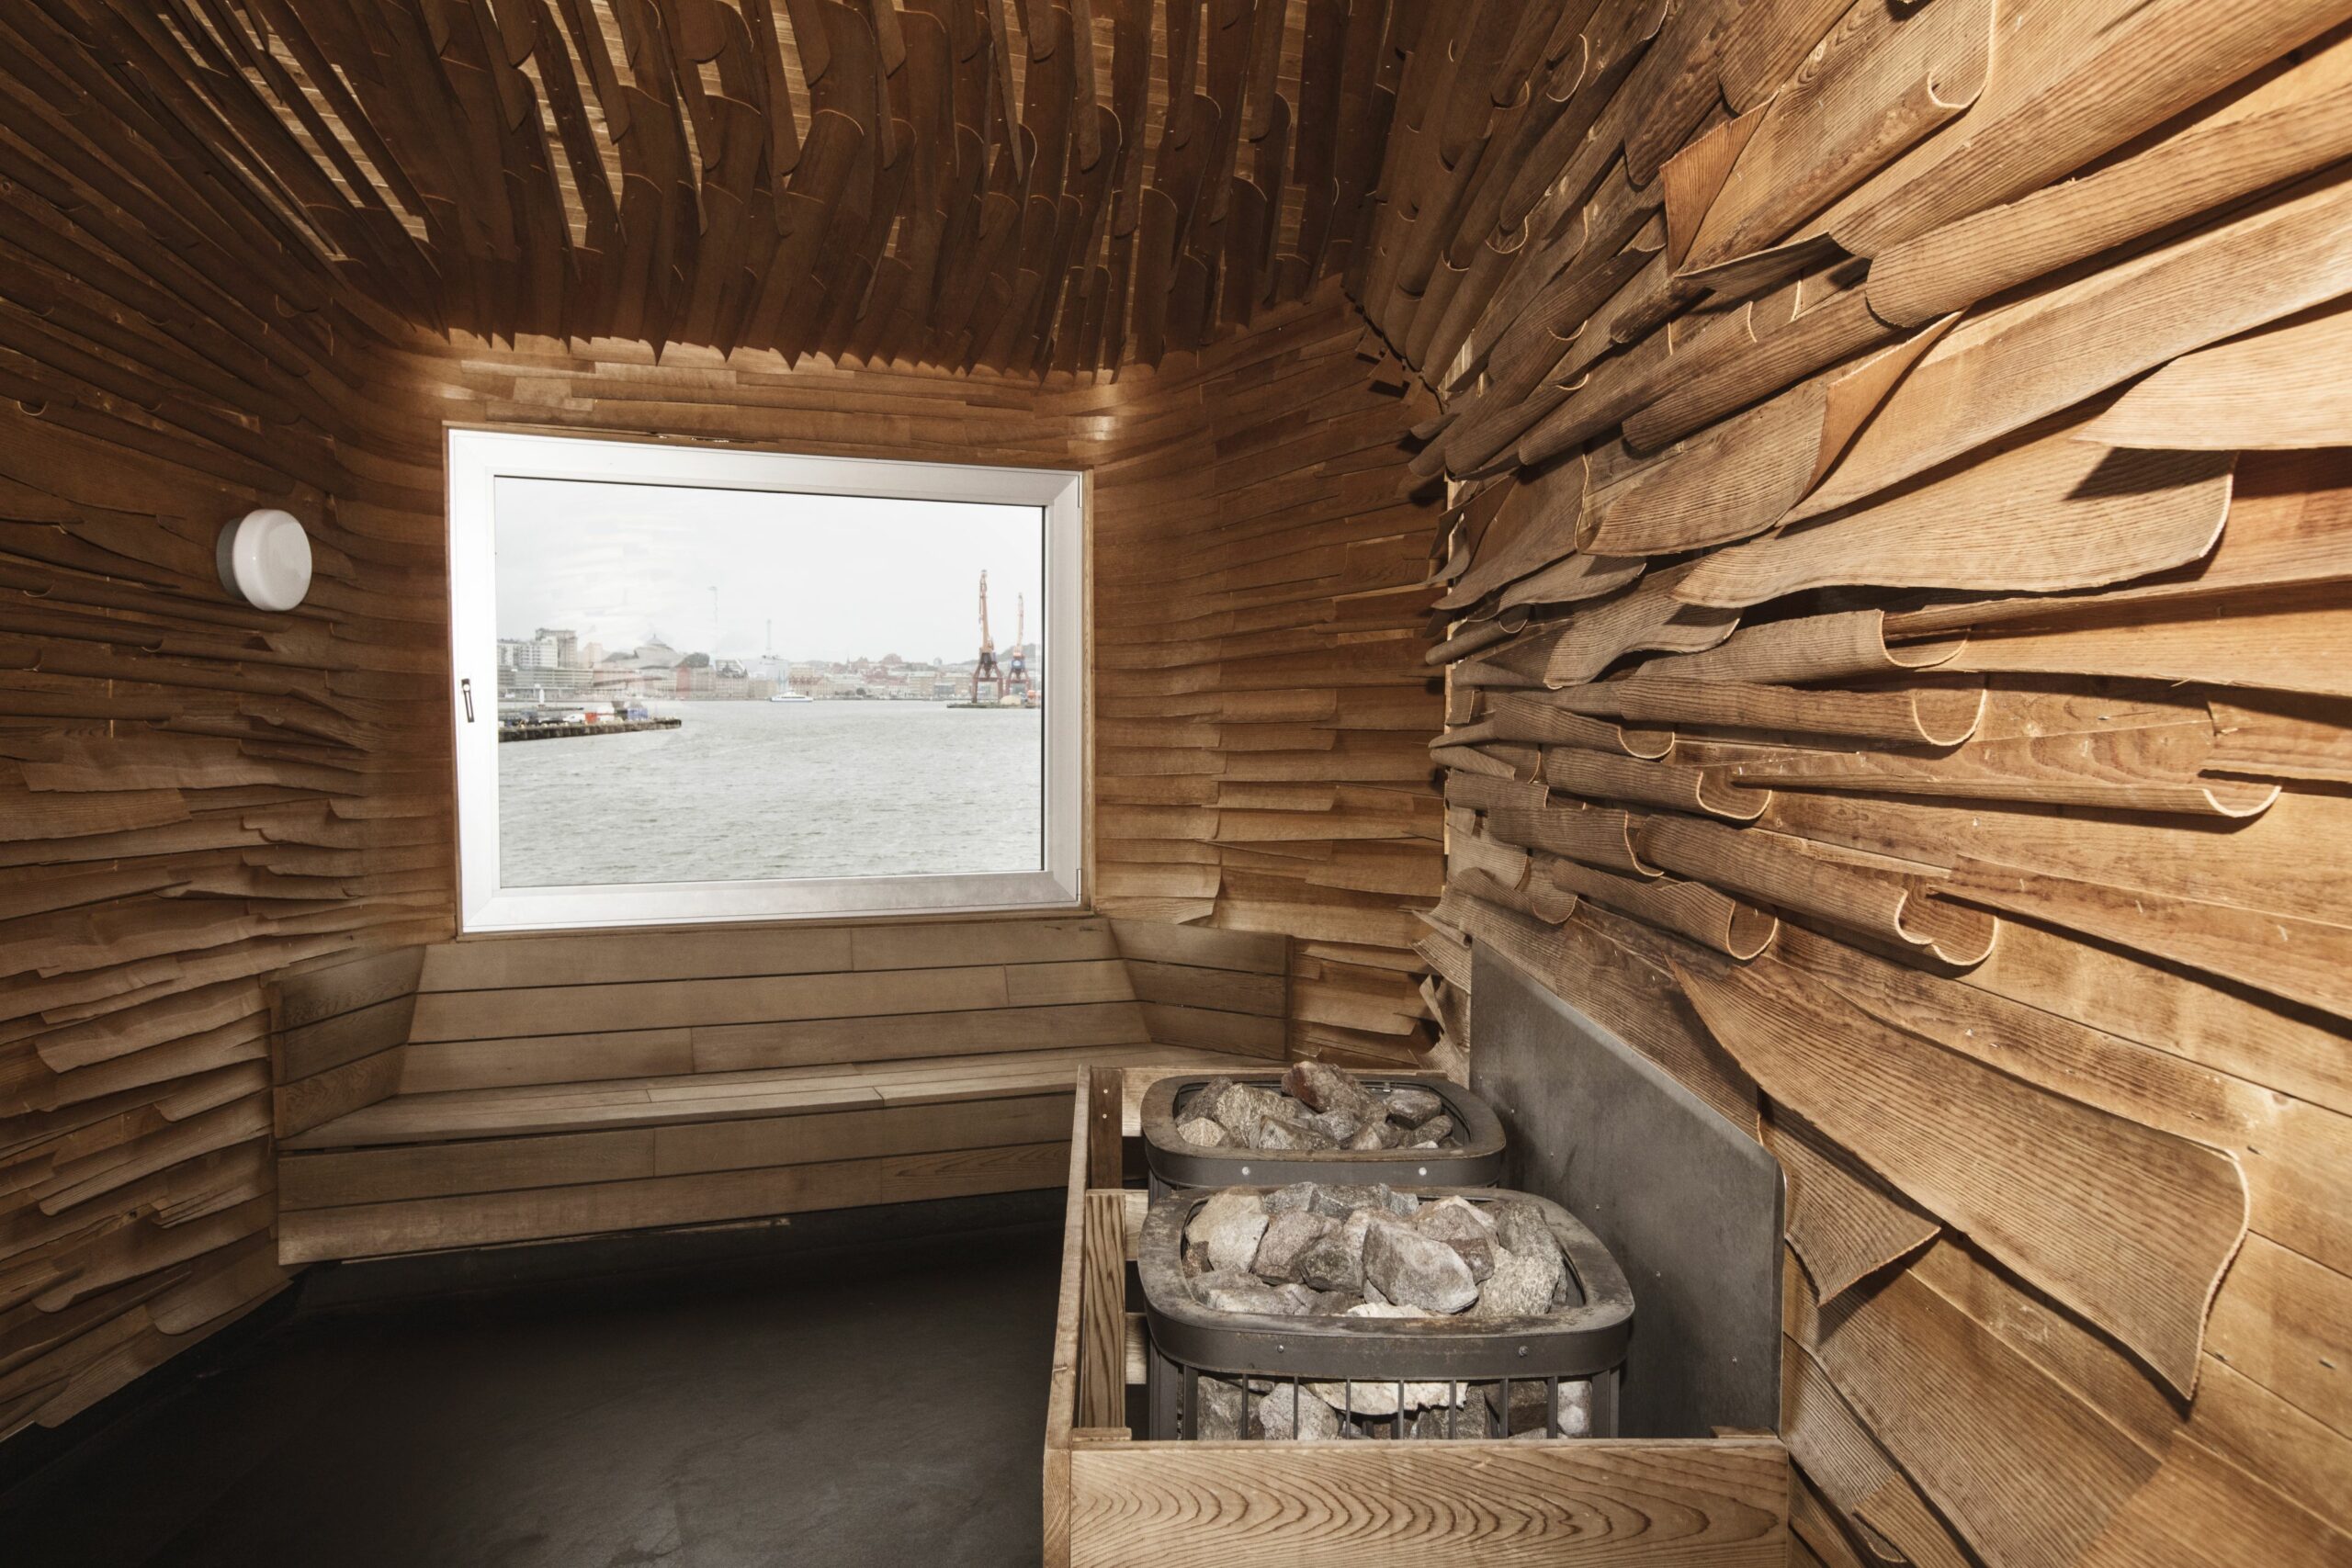 Seit Februar 2015 zieht in Westschweden ein besonderes Gebäude die Blicke auf sich: die Sauna im Freihafen von Göteborg. Sie gilt als eine der spektakulärsten Saunen des Landes und wurde größtenteils aus nachhaltigen Materialien geschaffen